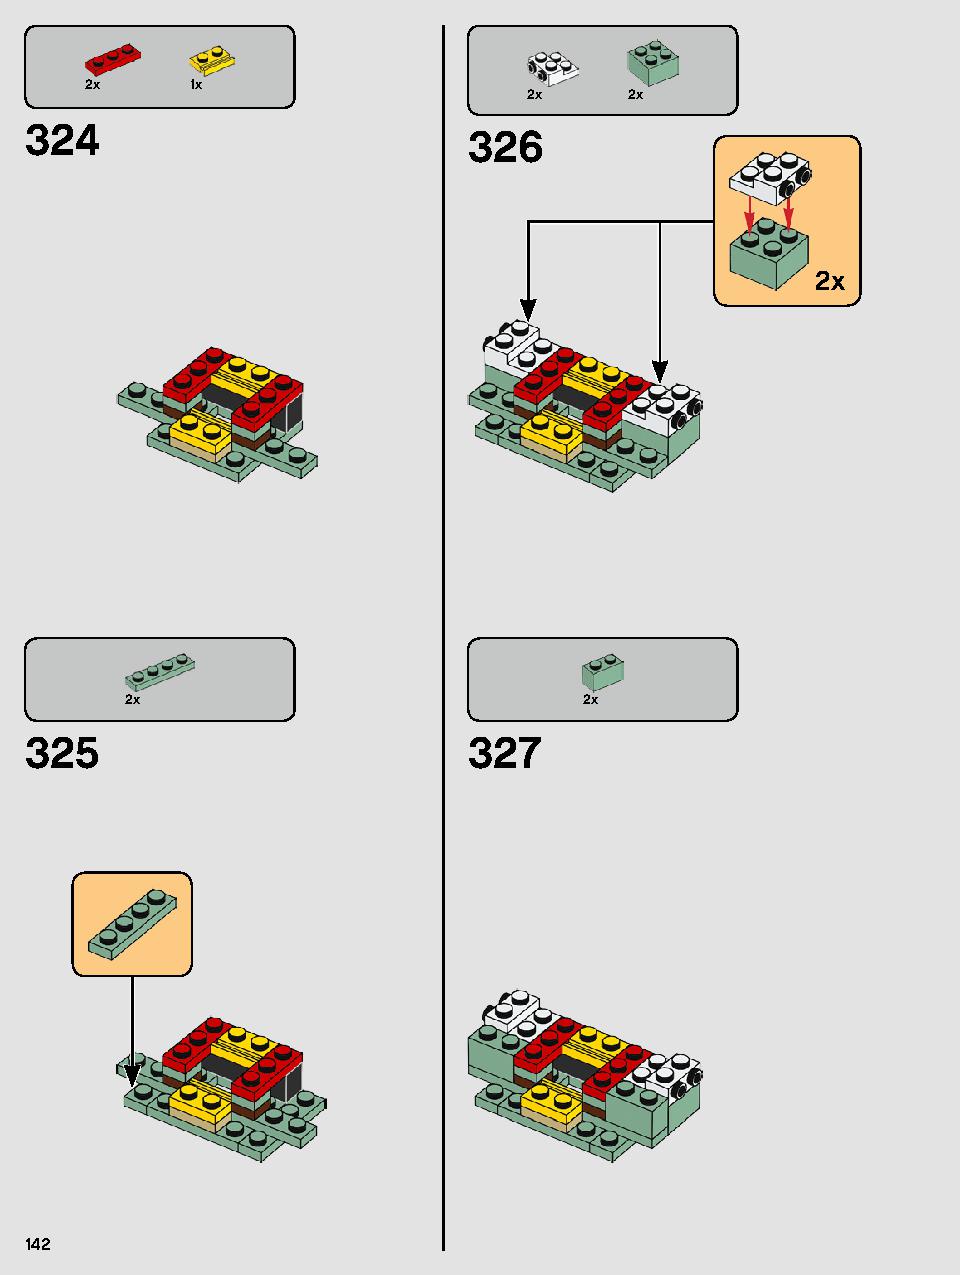 ヨーダ™ 75255 レゴの商品情報 レゴの説明書・組立方法 142 page